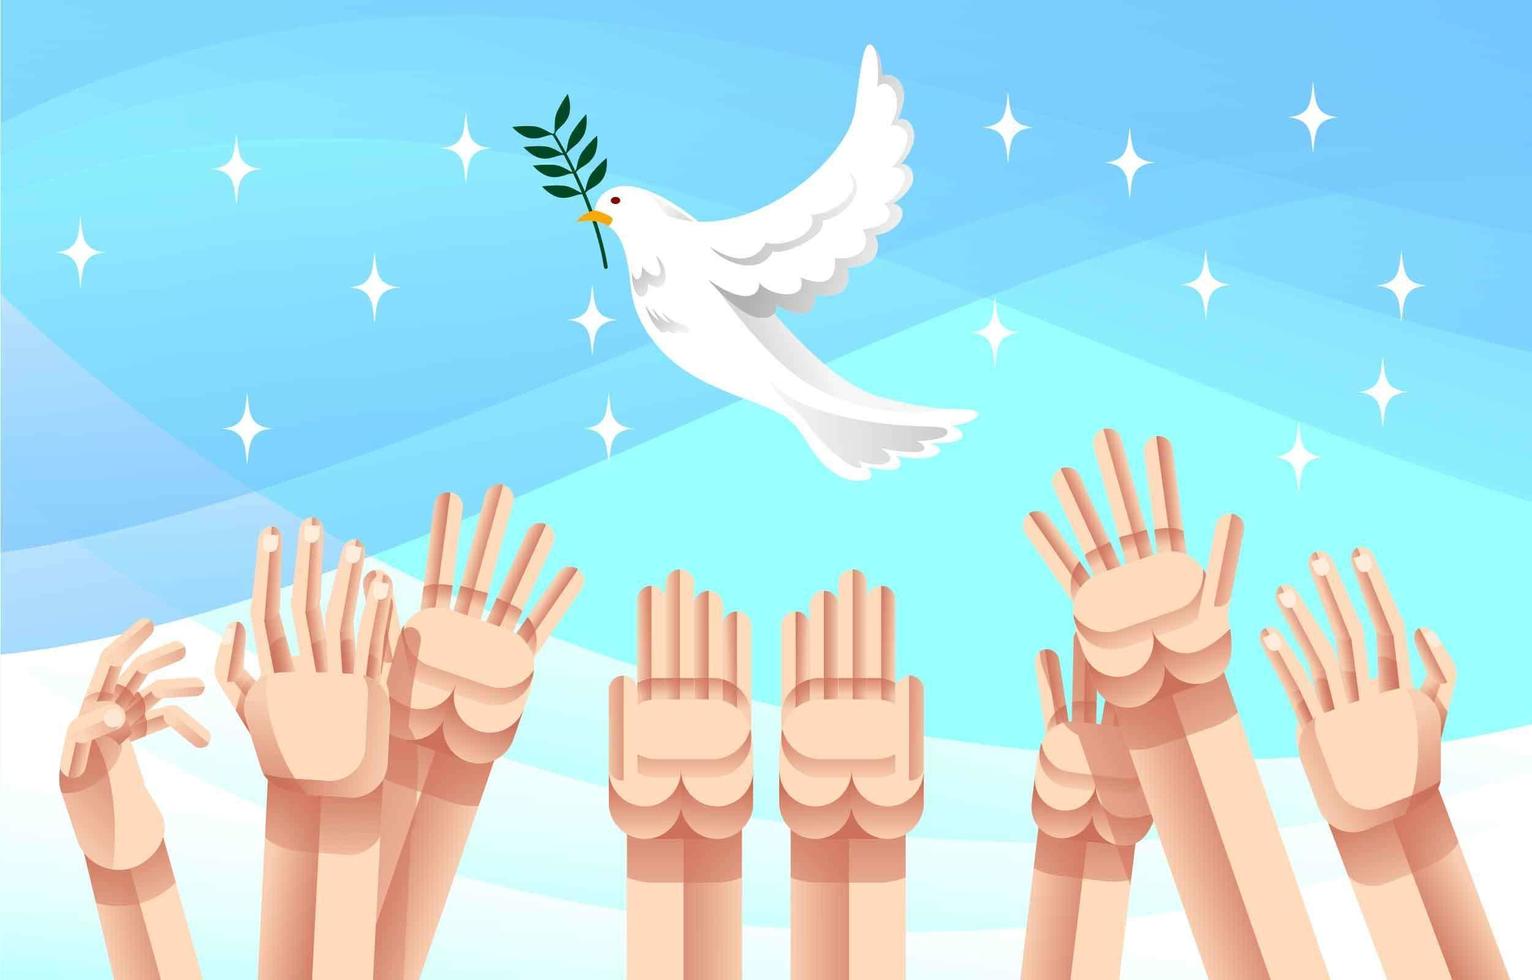 direito humano com pássaro pombo branco pacífico vetor